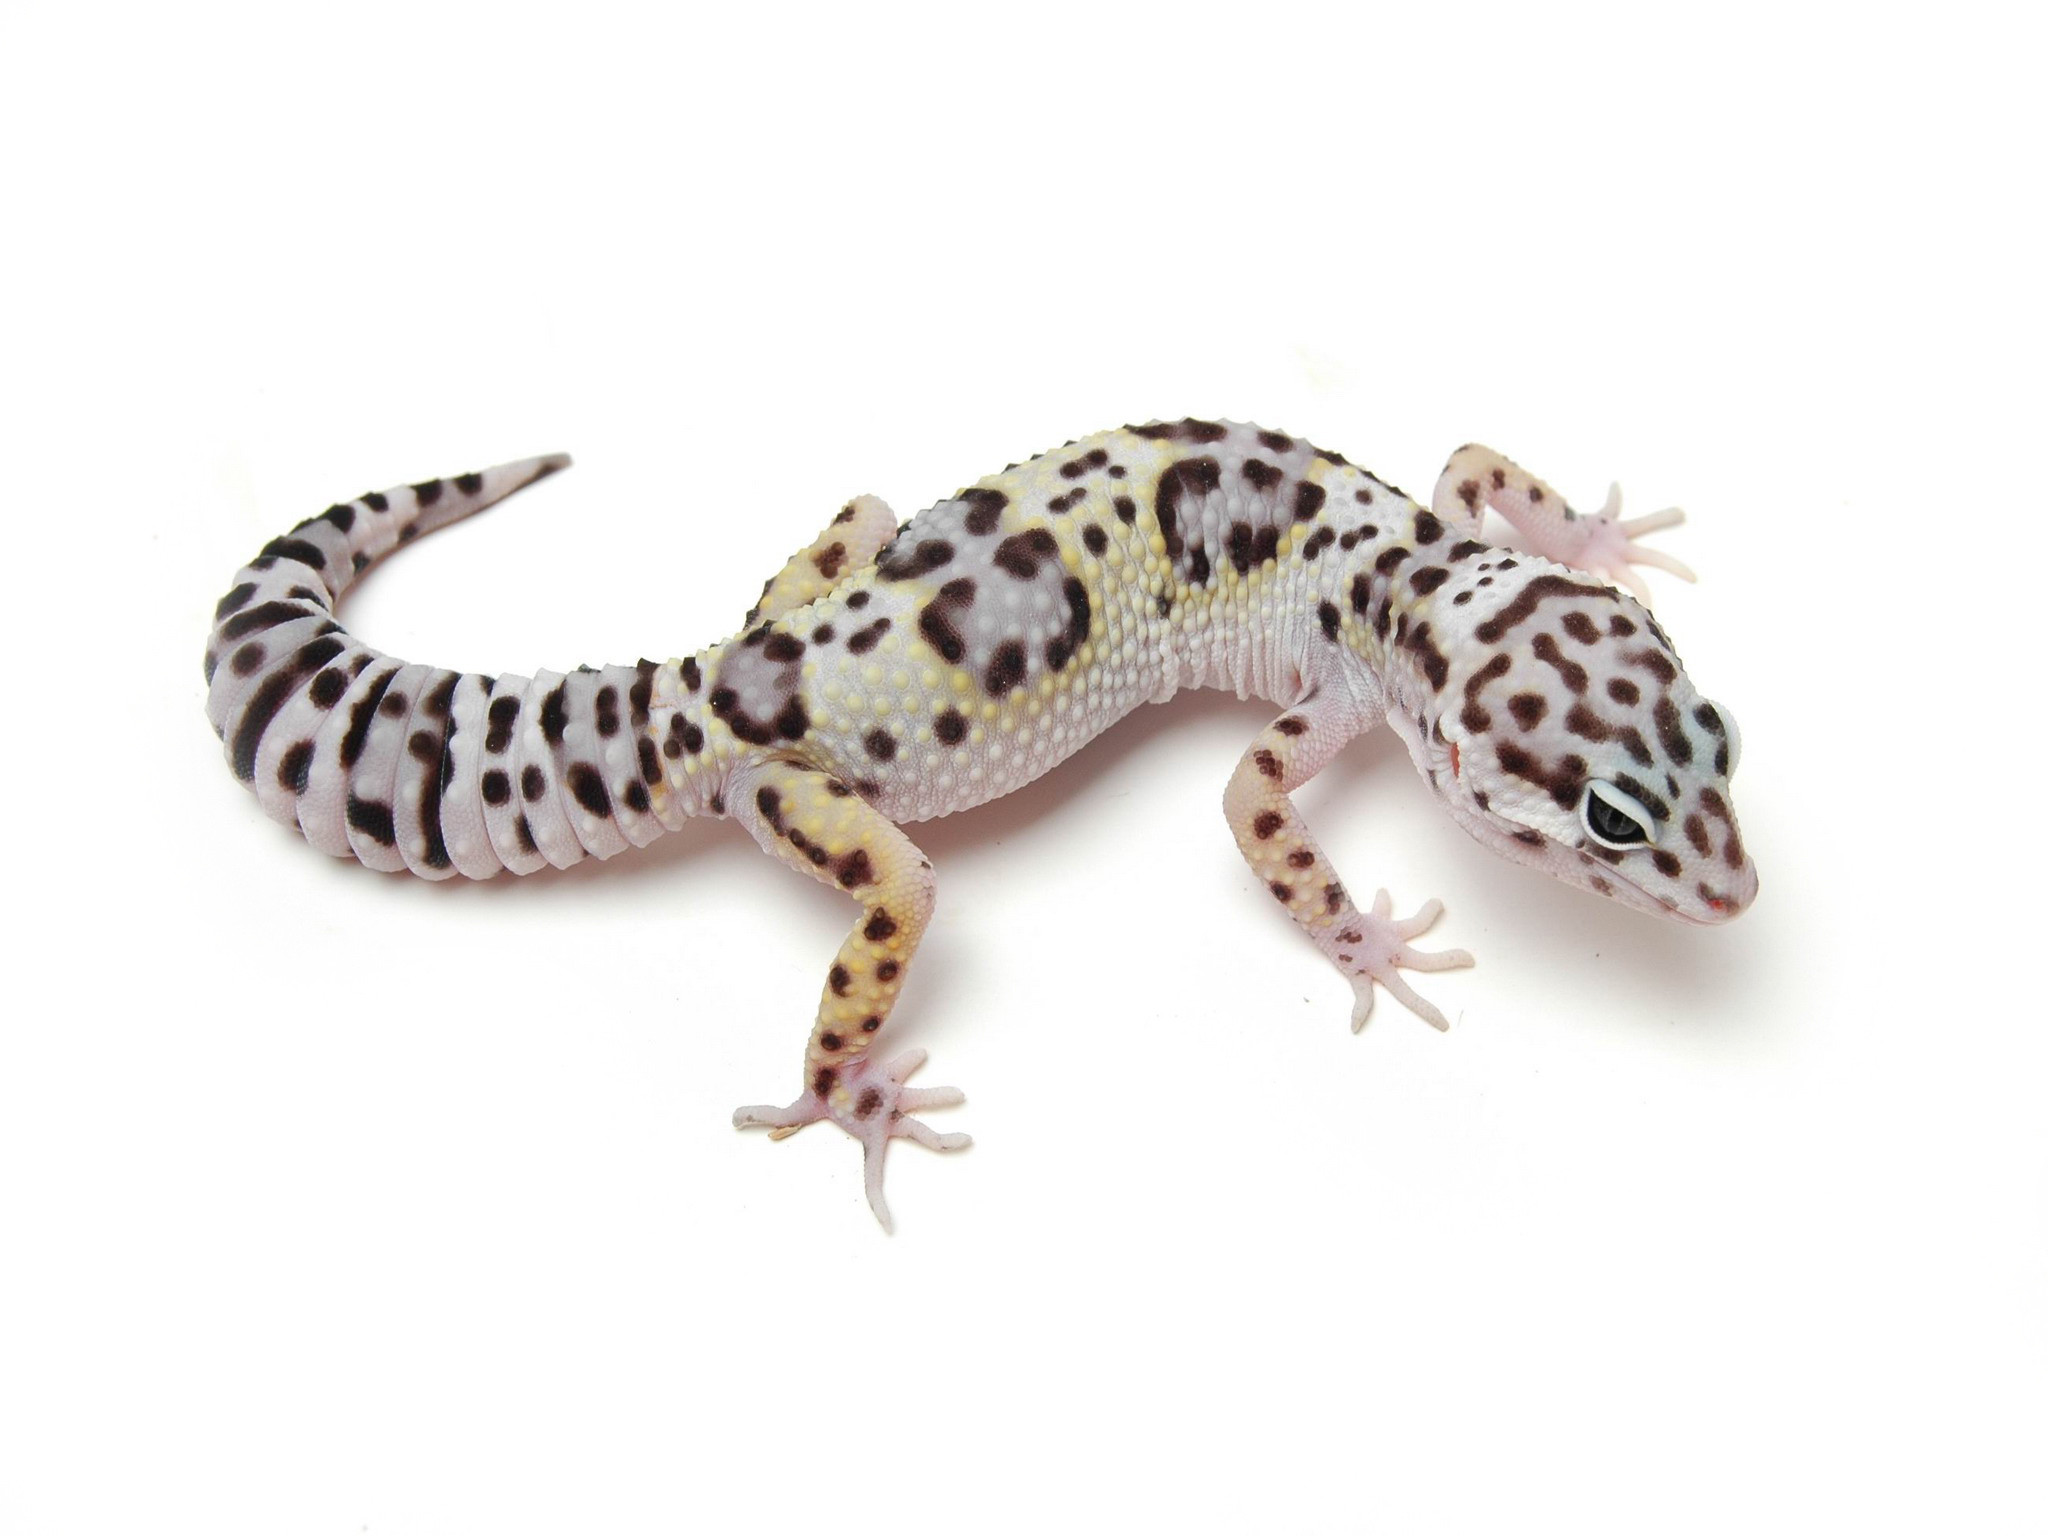 Leopard Gecko Wallpaper High Definition Suwall